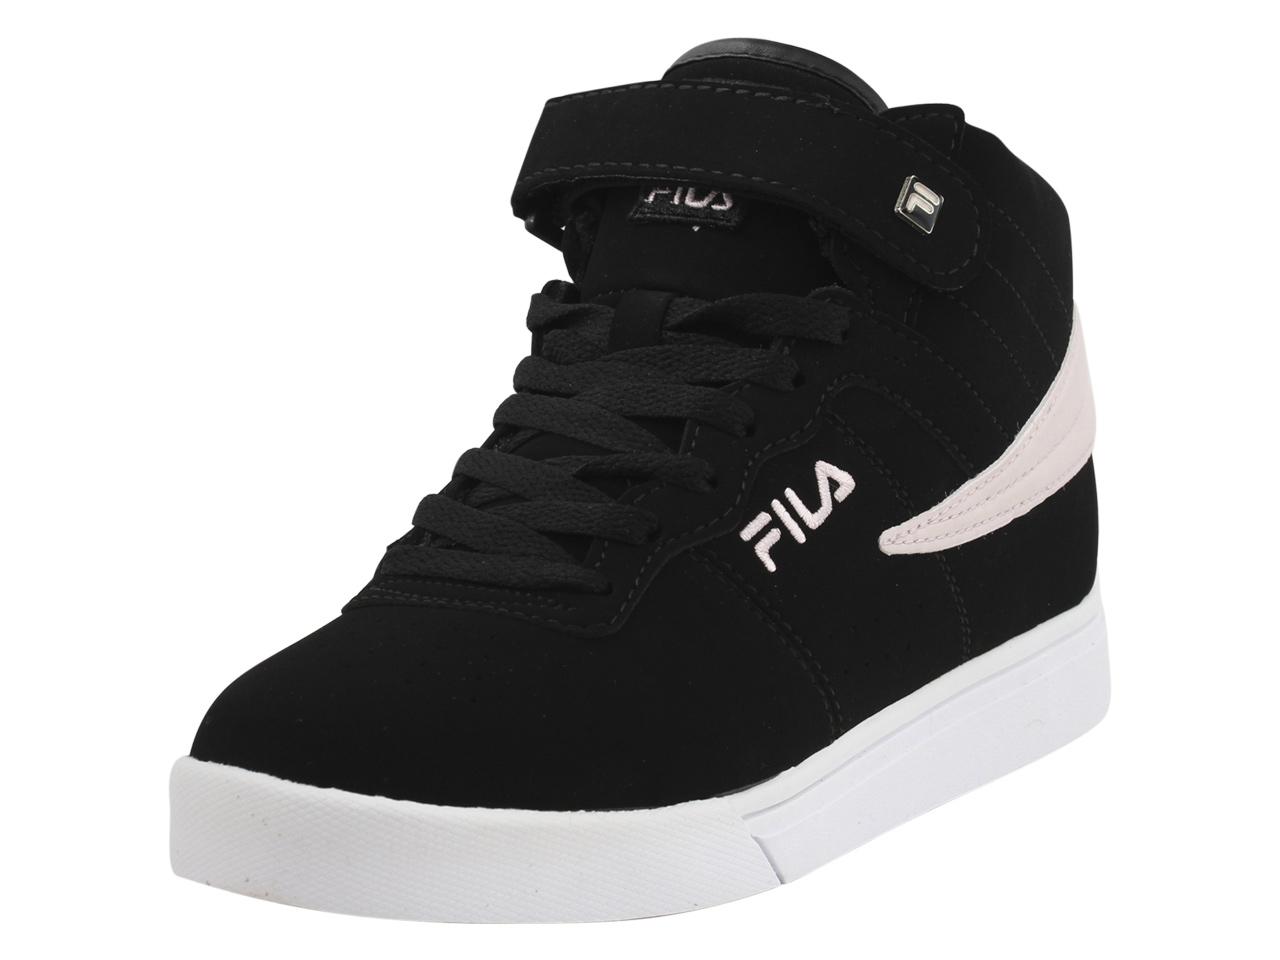 Fila Women's Vulc 13 MP Sneakers Shoes - Black/Chalk Pink/White - 10 B(M) US